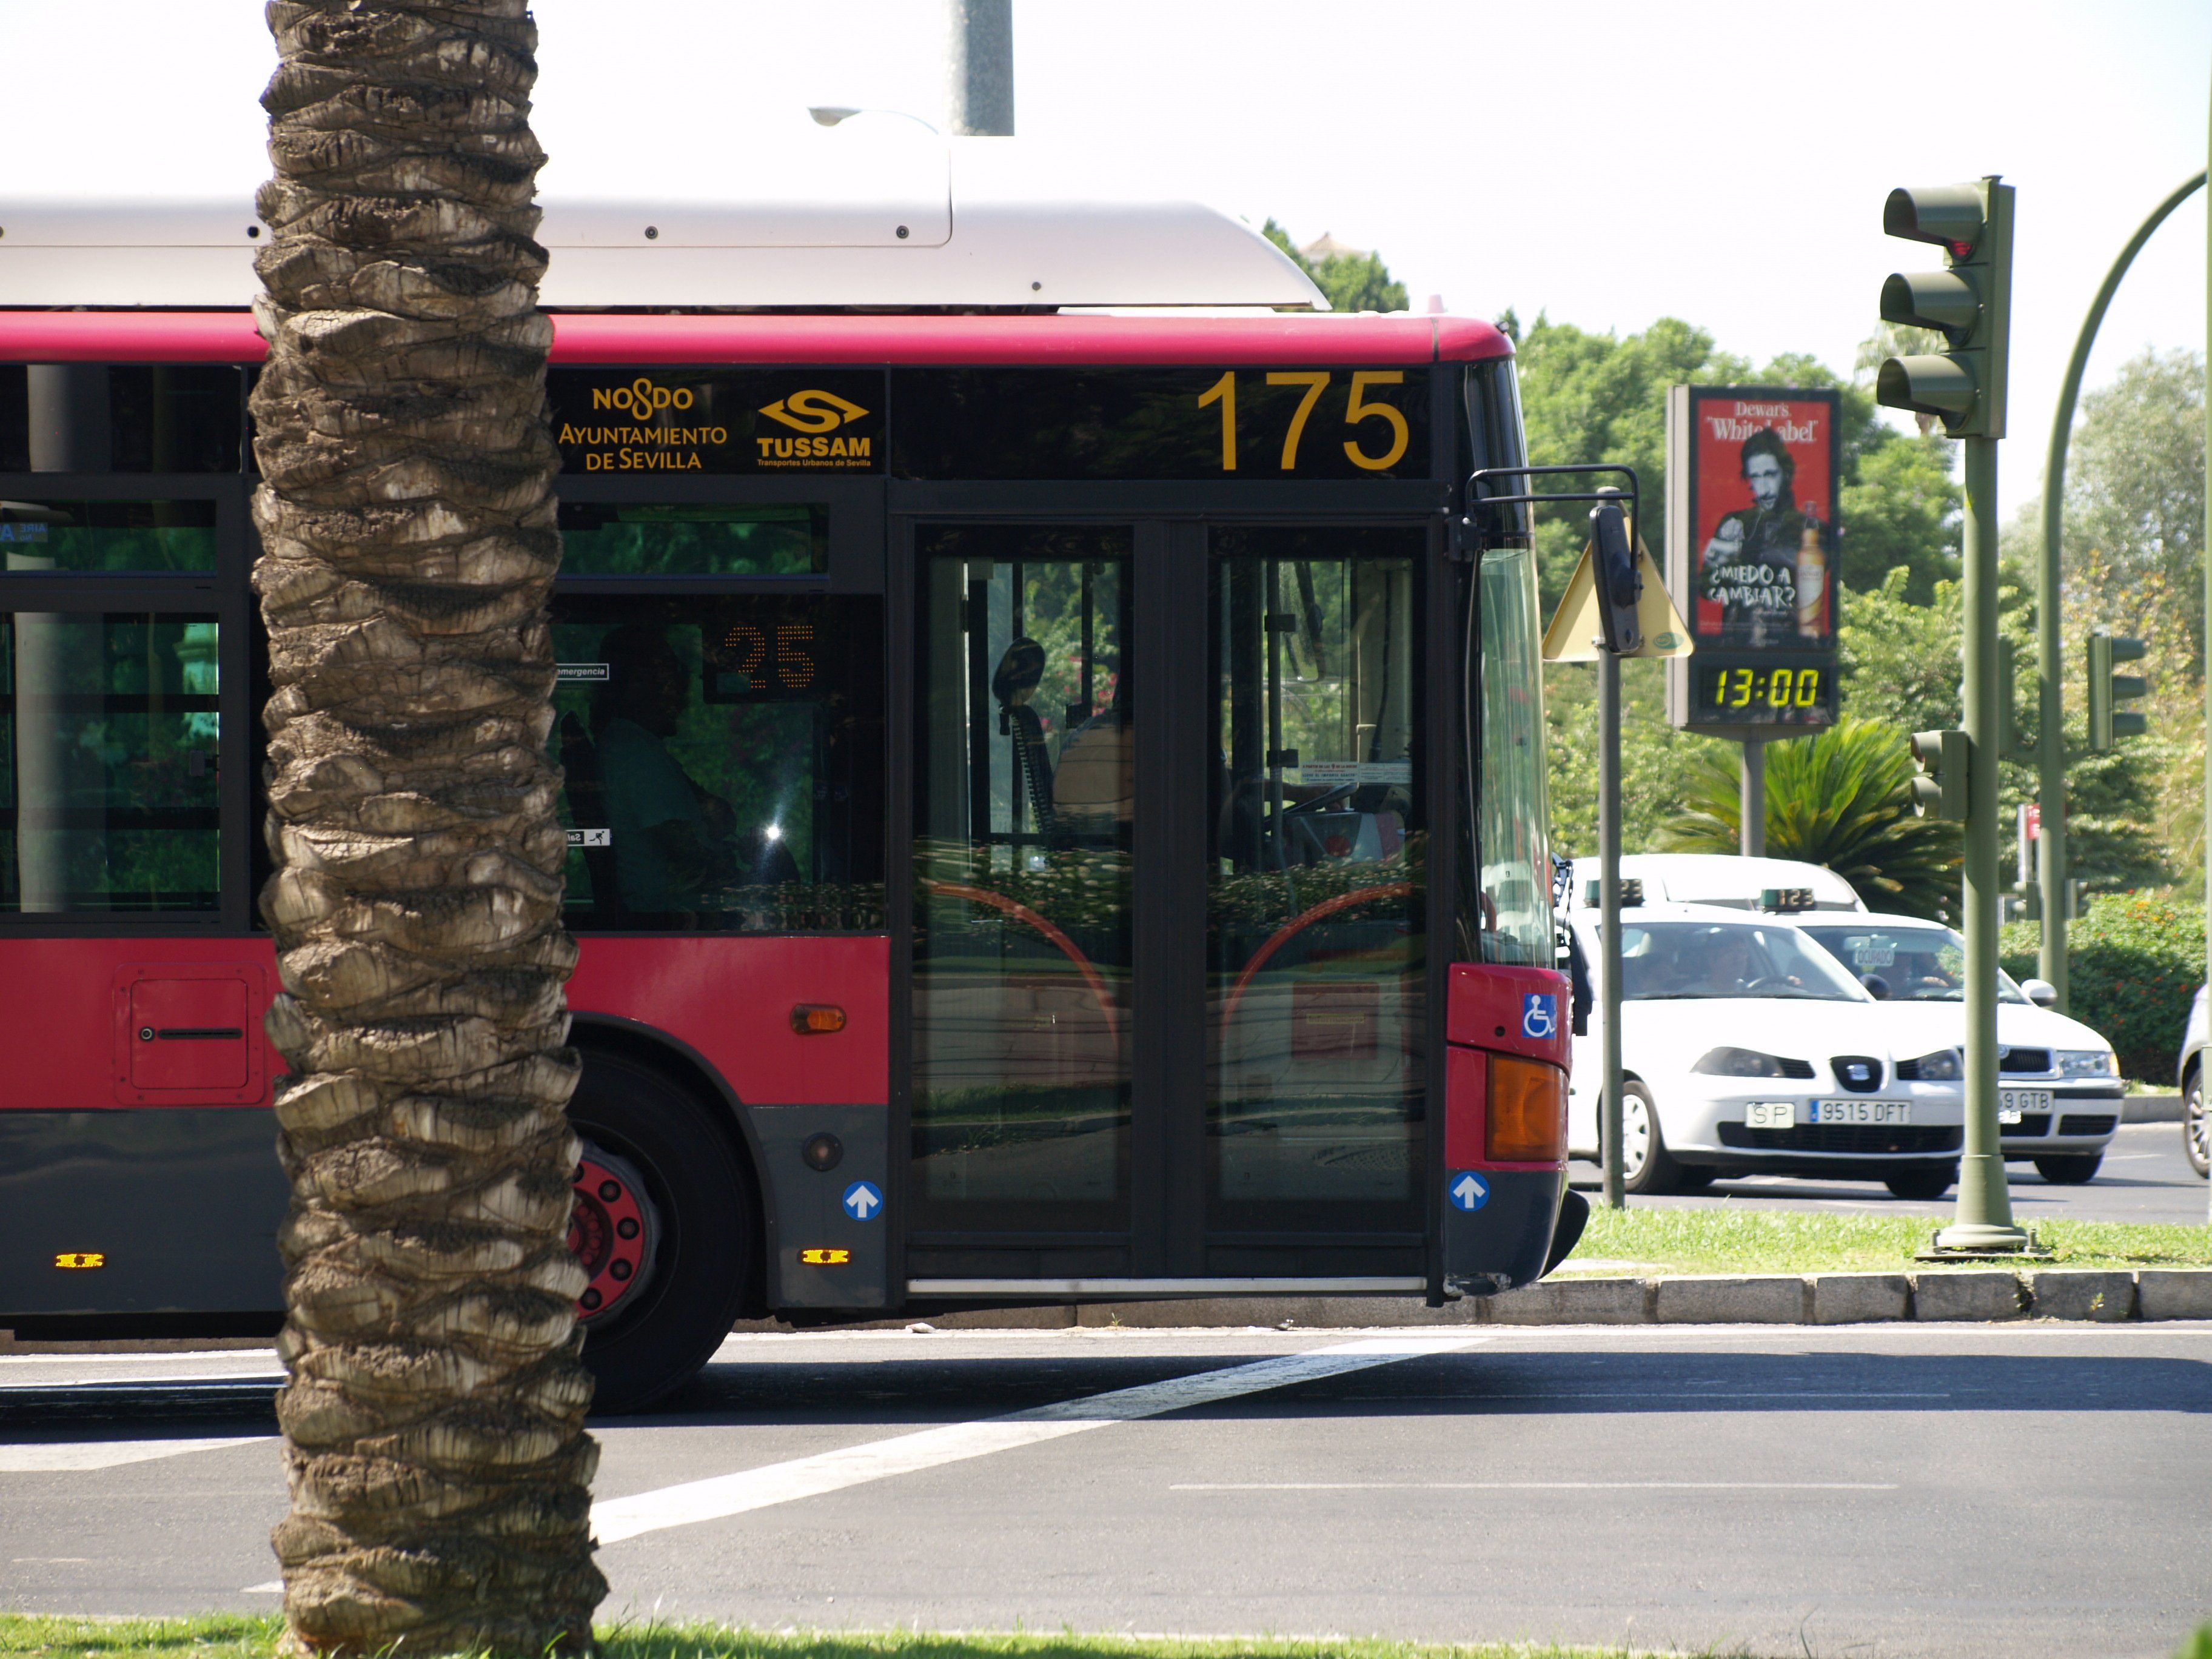 Autobuses de Sevilla en una imagen reciente. FOTO: Ayto. Sevilla